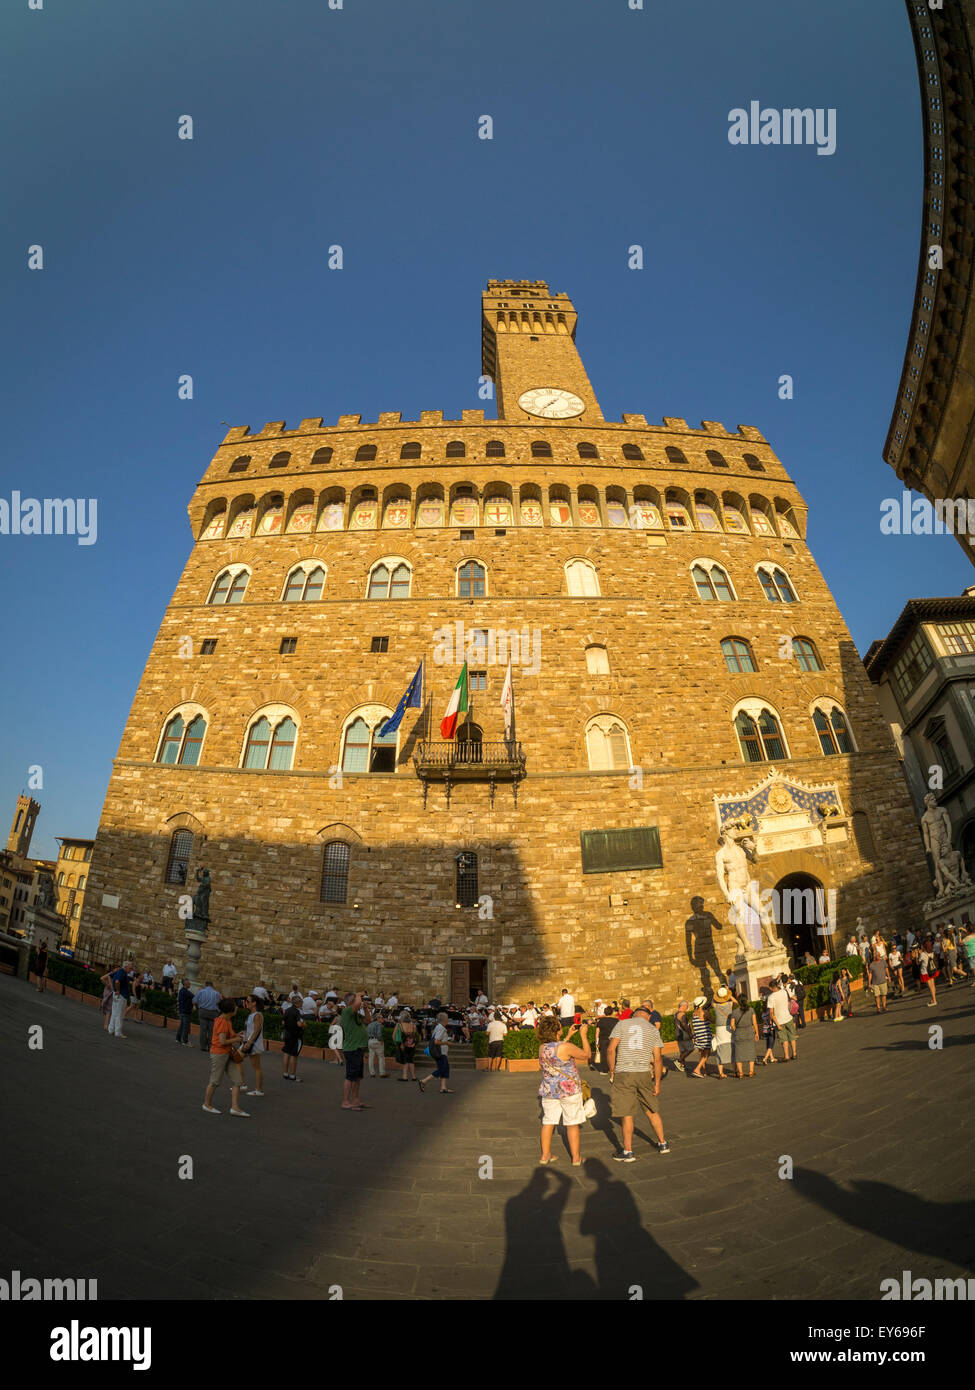 Le Palazzo Vecchio donne sur la Piazza della Signoria. Florence, Italie. Banque D'Images